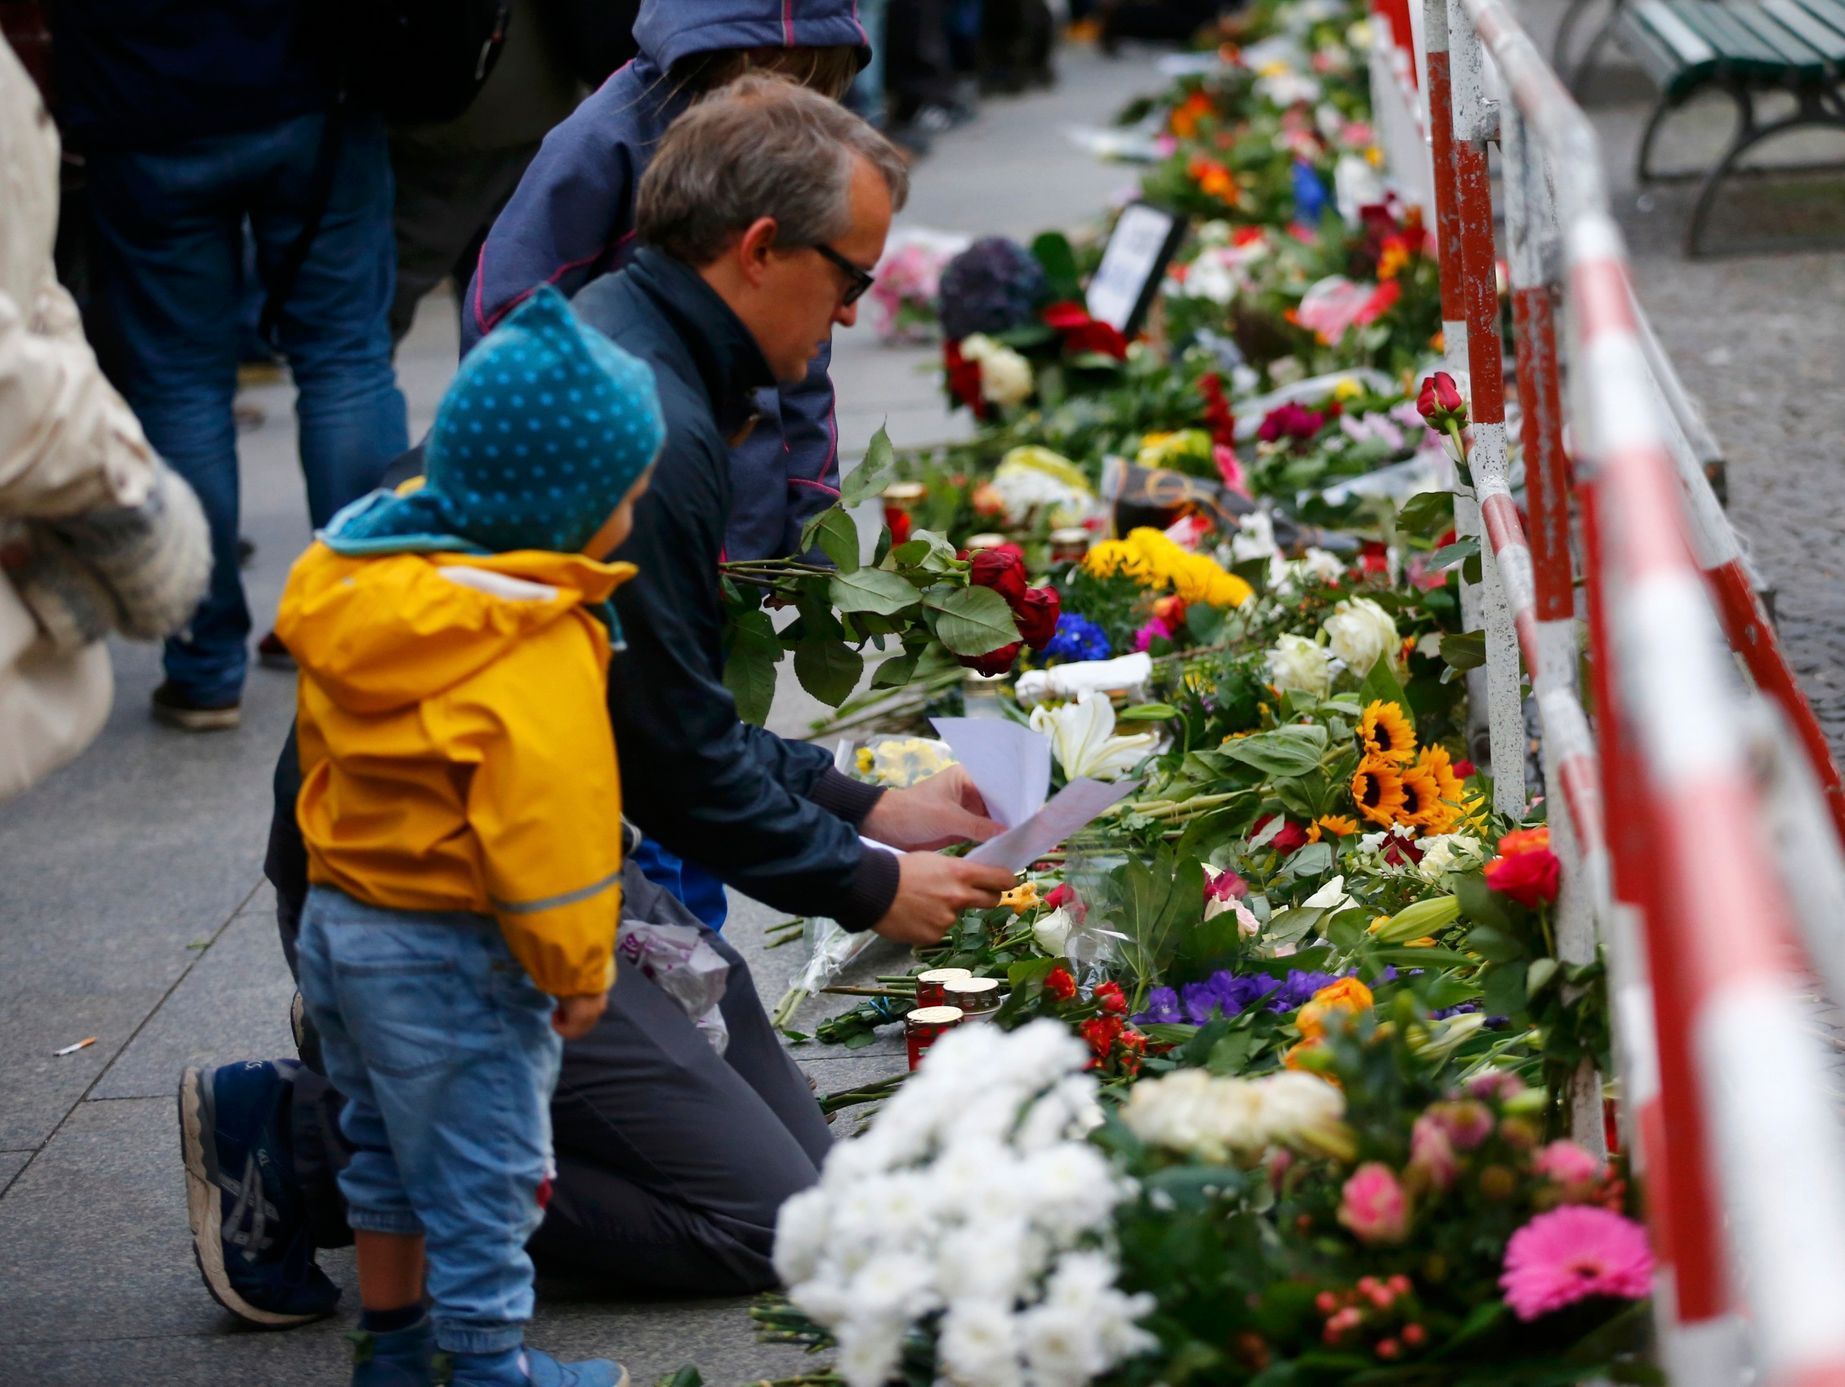 Den po útocích v Paříži